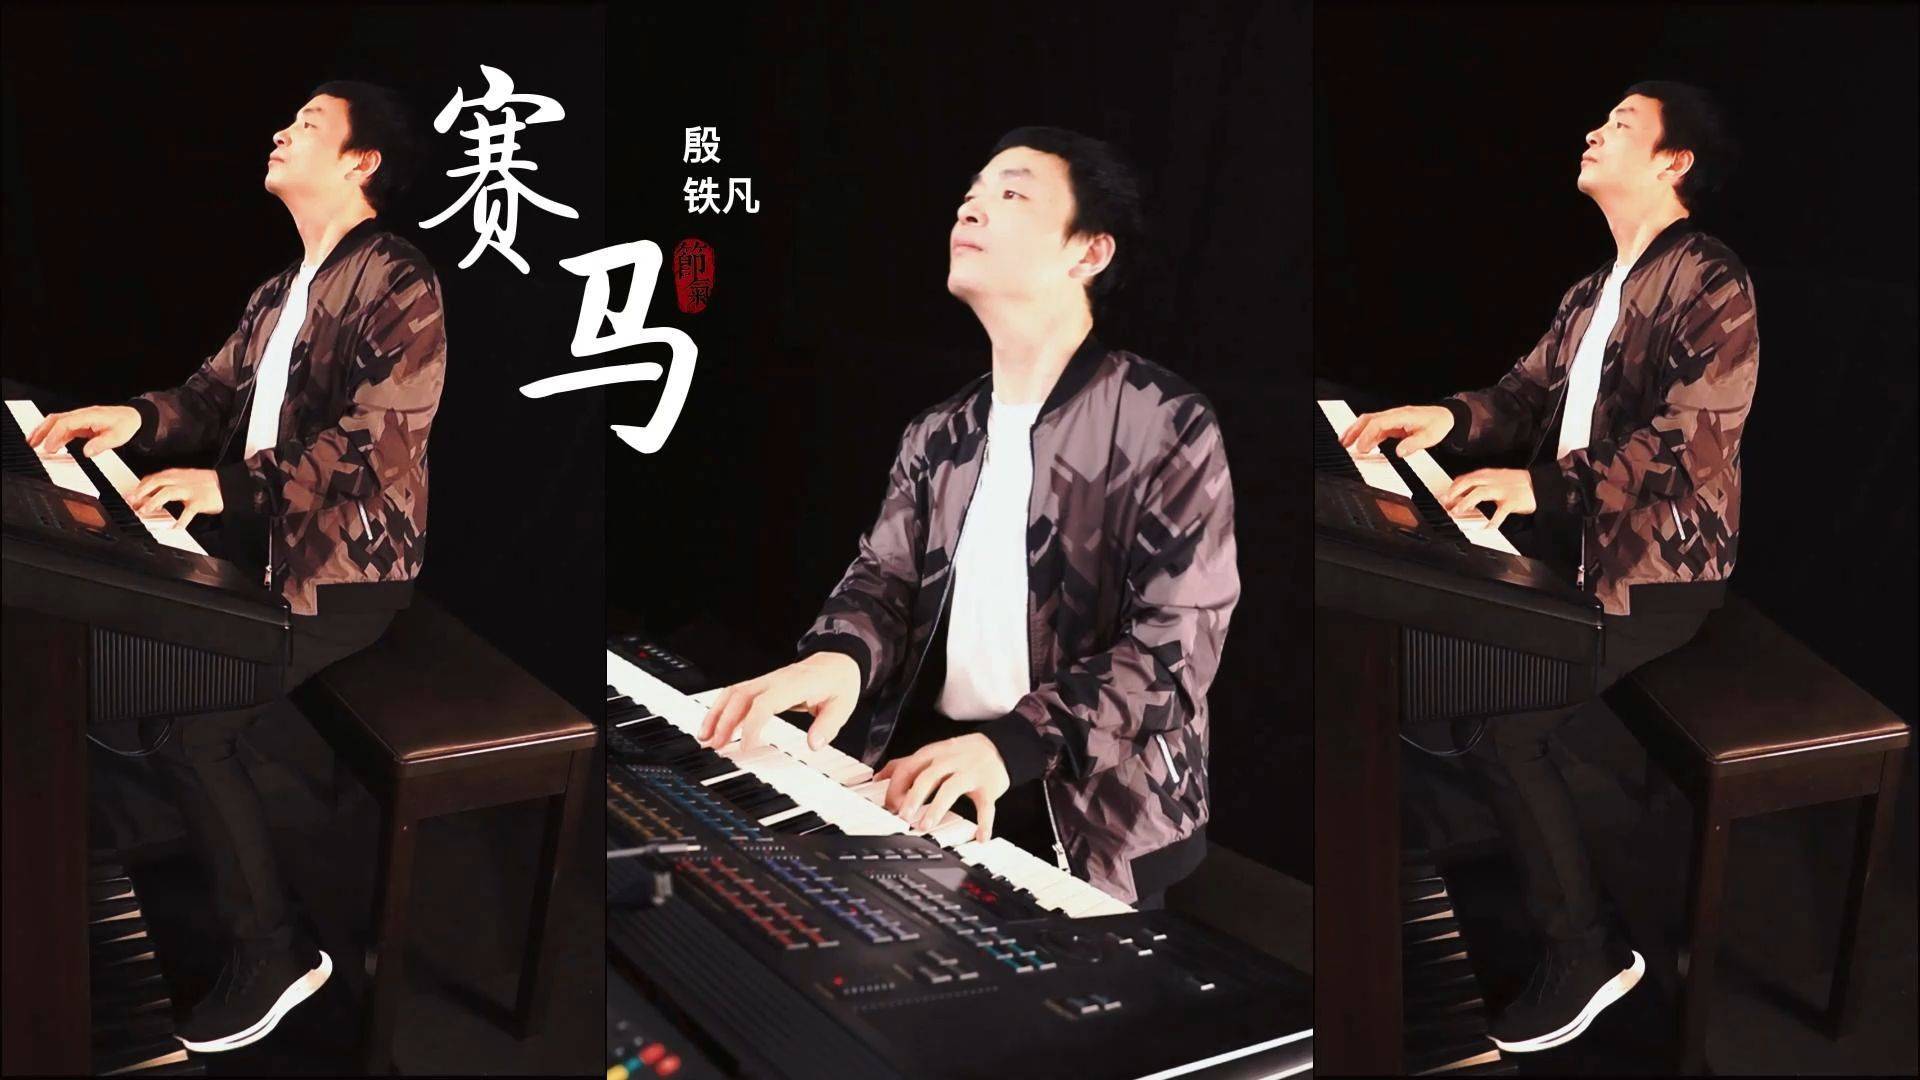 《赛马》重低音dj版,双排键电子琴演奏:殷铁凡